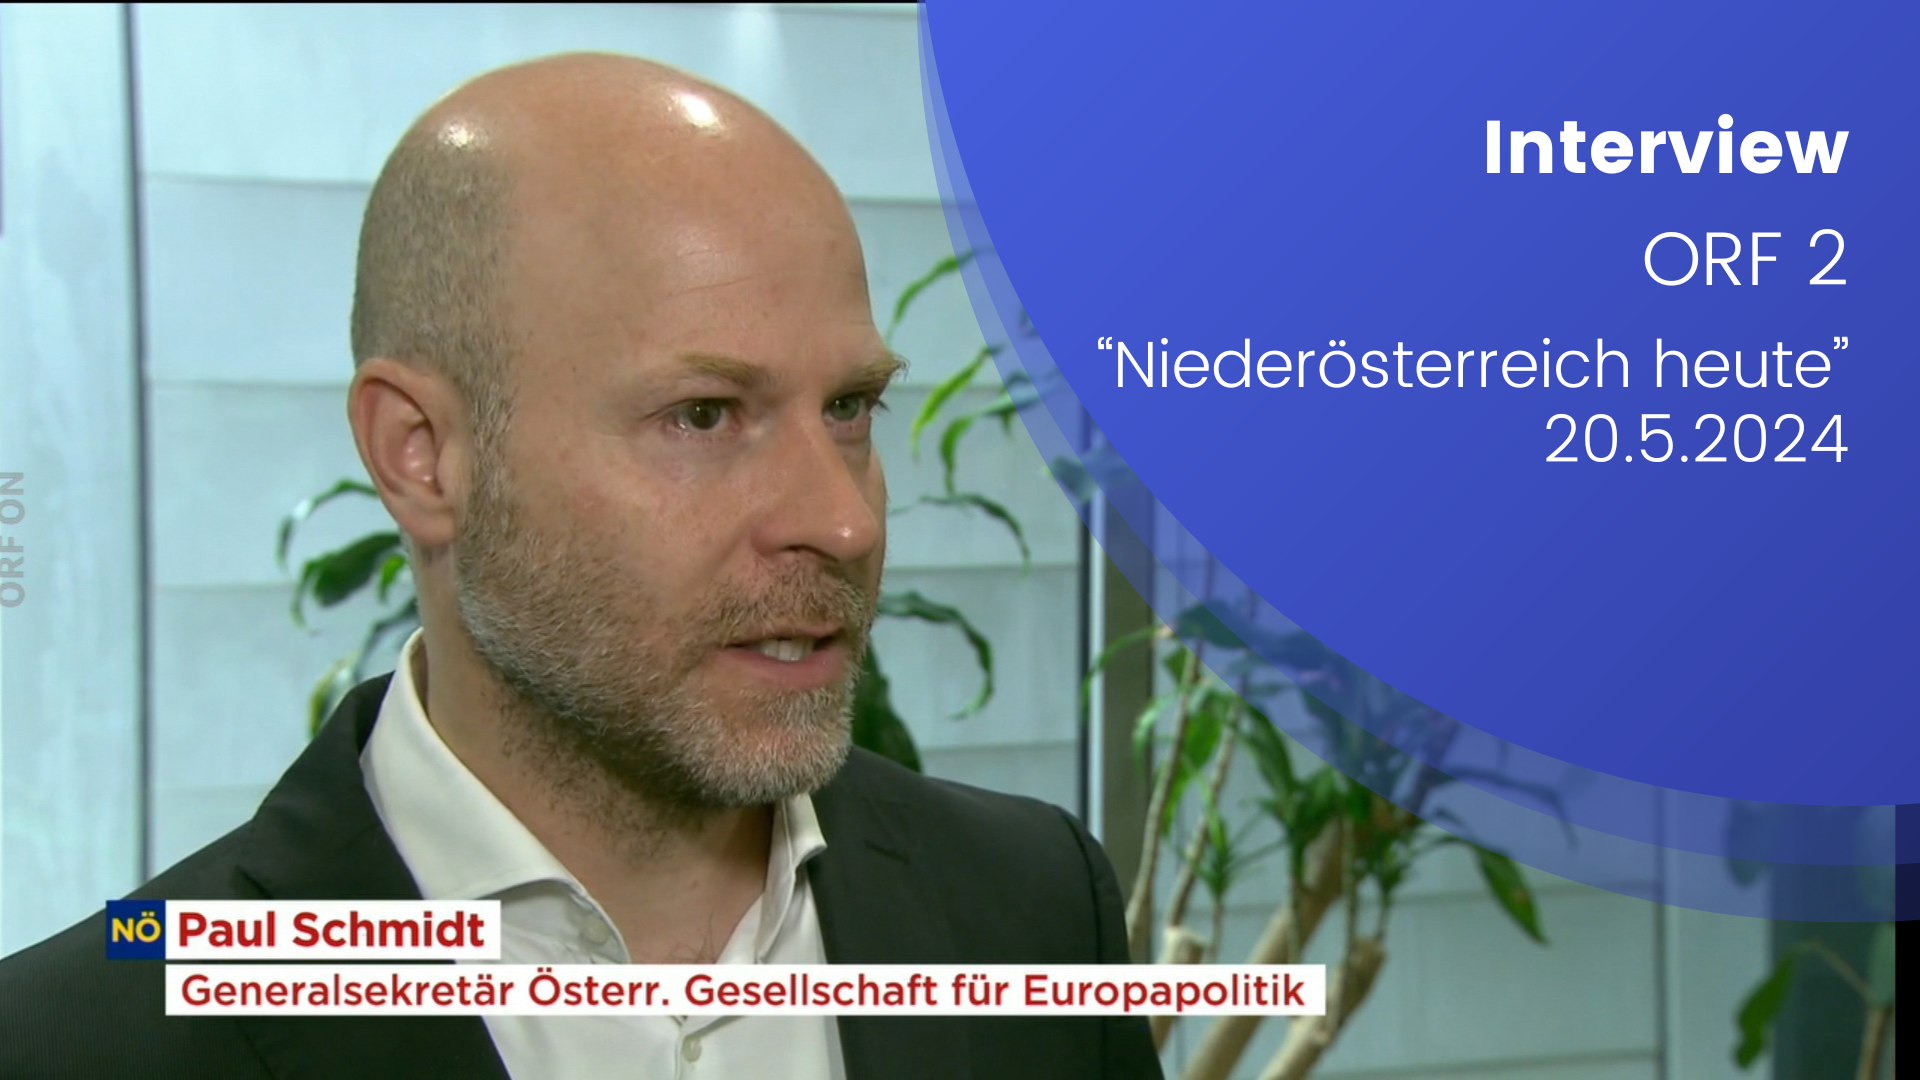 Paul Schmidt stehend im Interview mit Niederösterreich heute. Hinter ihm sind grüne Pflanzen zu erkennen. Textaufschrift: "Interview ORF 2 Niederösterreich heute 20.05.2024"